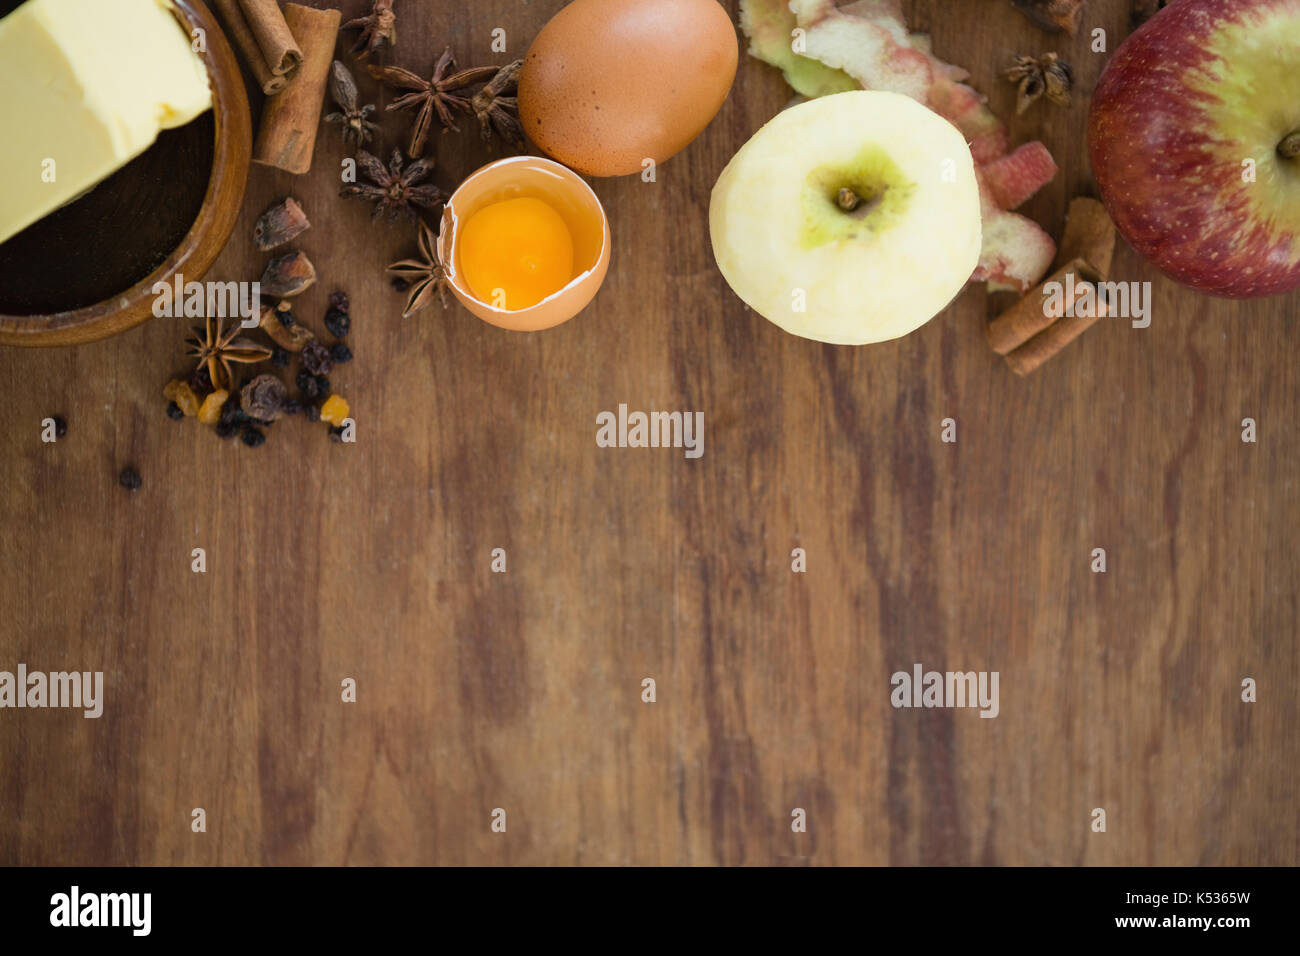 Directamente encima de shot de Apple con huevo y especias sobre mesa de madera Foto de stock